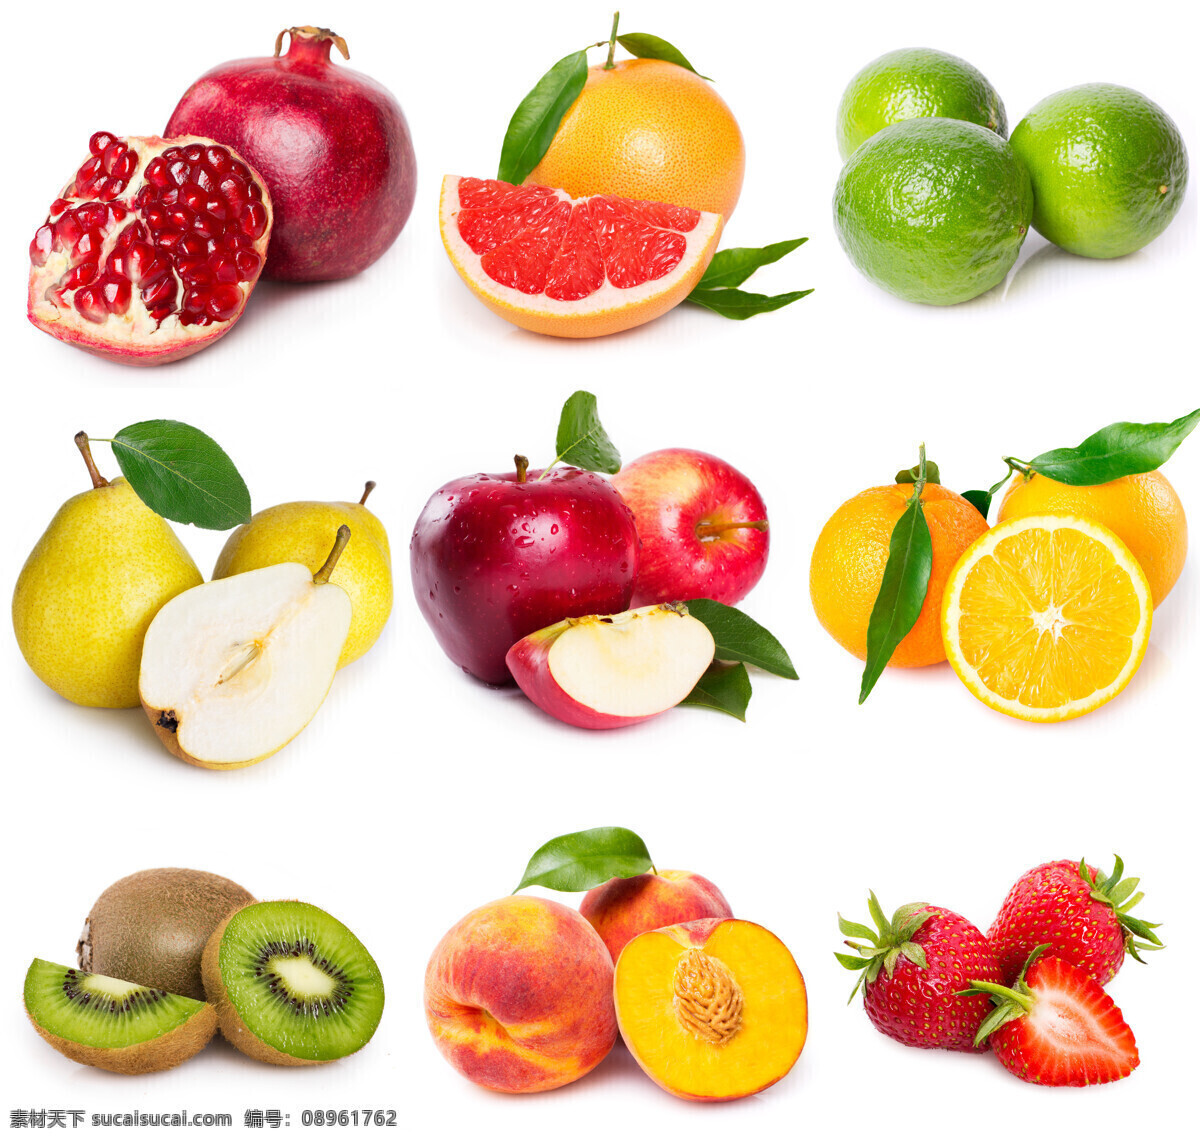 新鲜 水果 石棺 梨 猕猴桃 水蜜桃 草莓 橙子 苹果 新鲜水果 果实 水果摄影 水果图片 餐饮美食